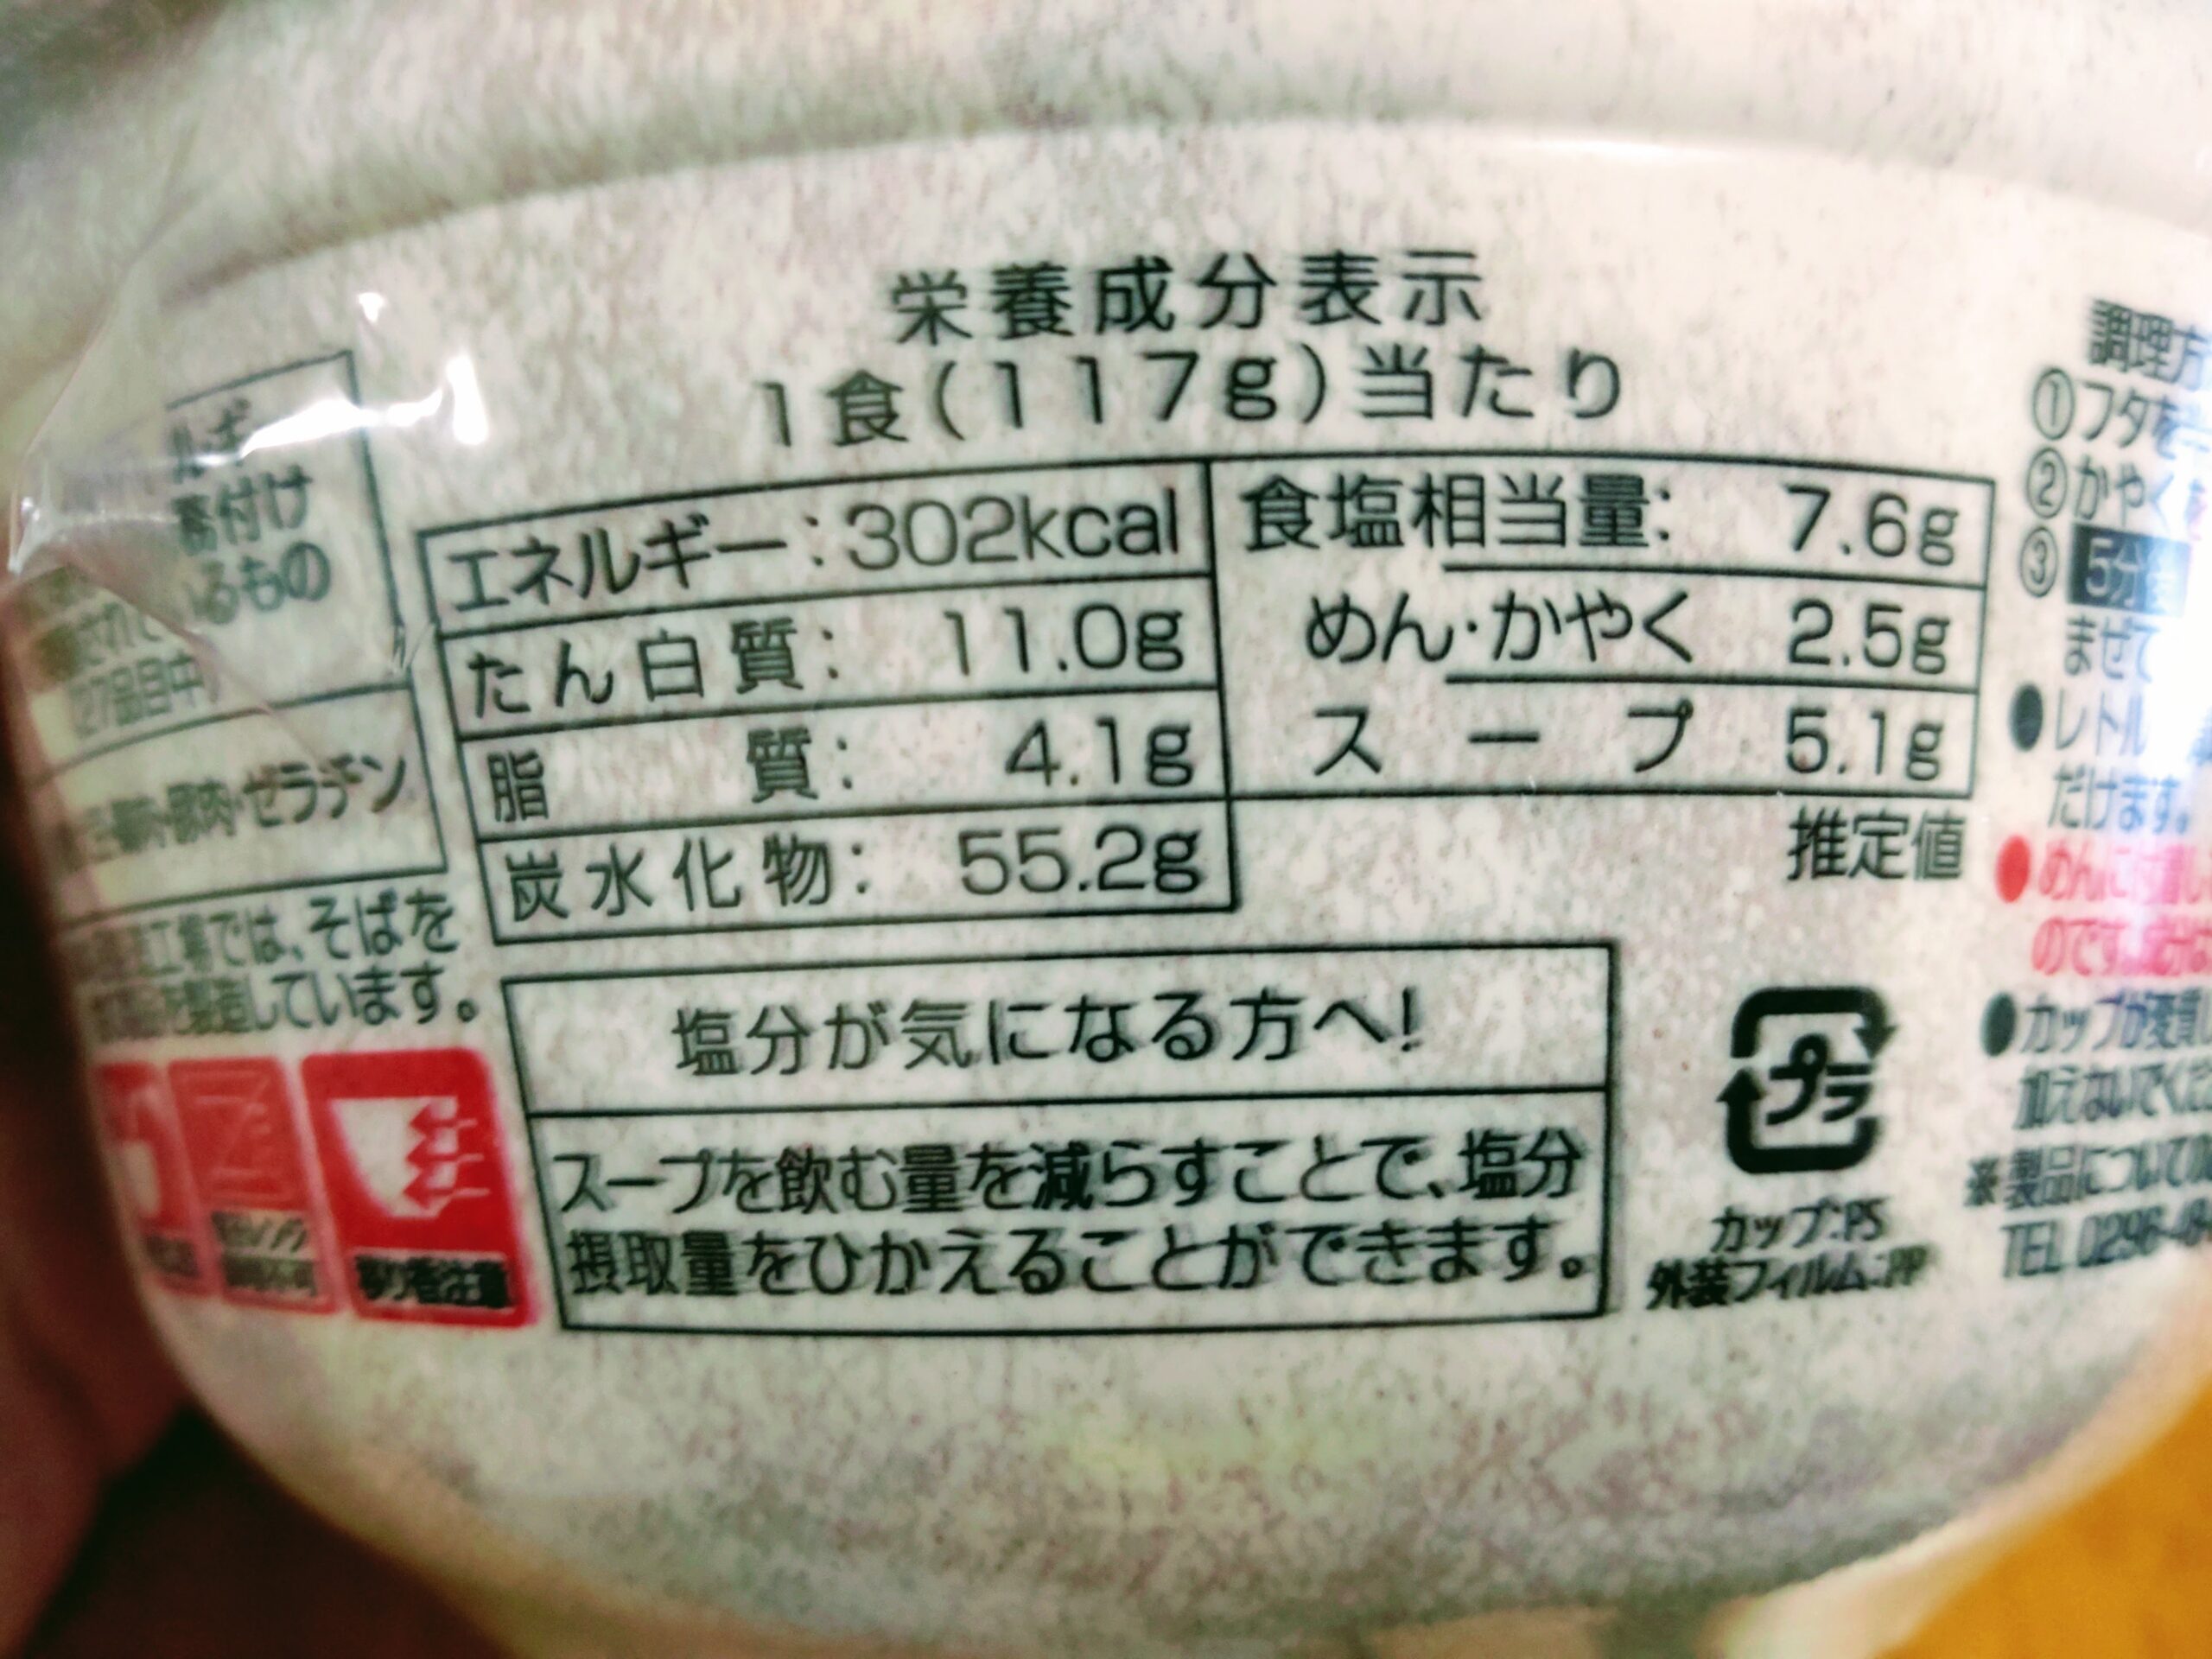 凄麺 千葉竹岡式ラーメンの栄養成分表示